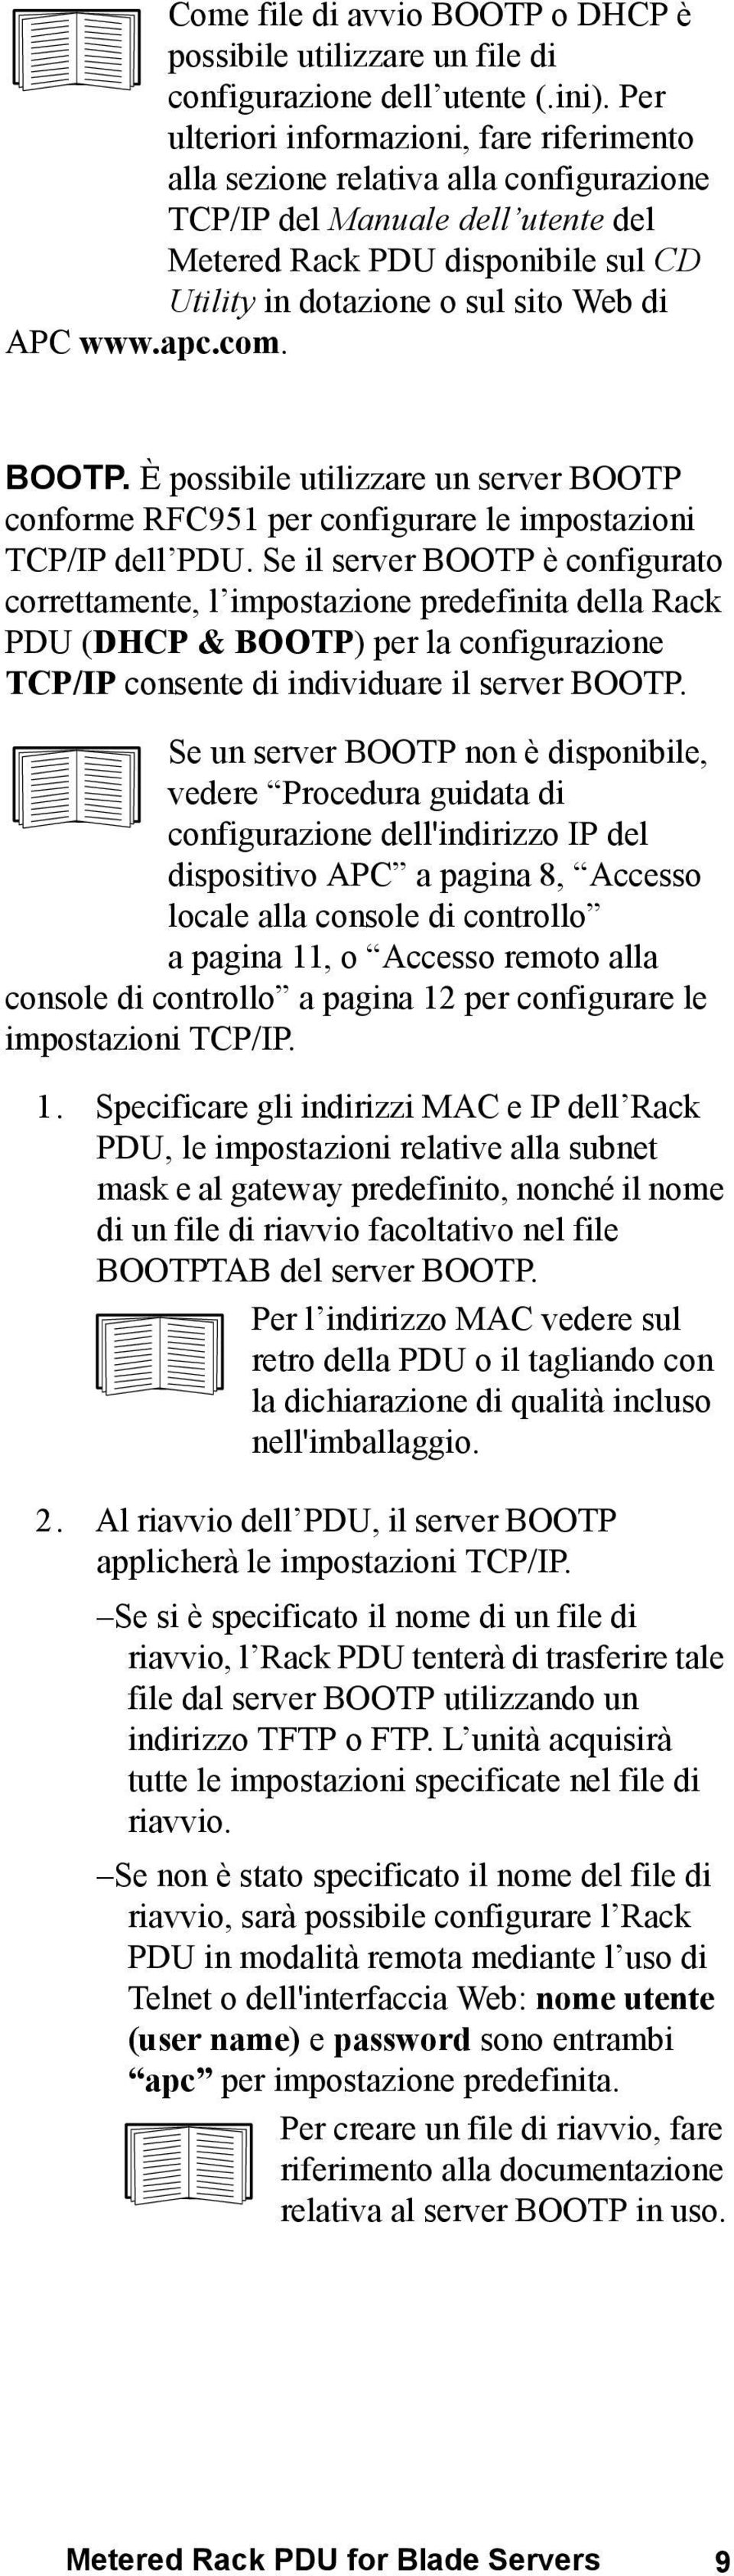 APC www.apc.com. BOOTP. È possibile utilizzare un server BOOTP conforme RFC951 per configurare le impostazioni TCP/IP dell PDU.